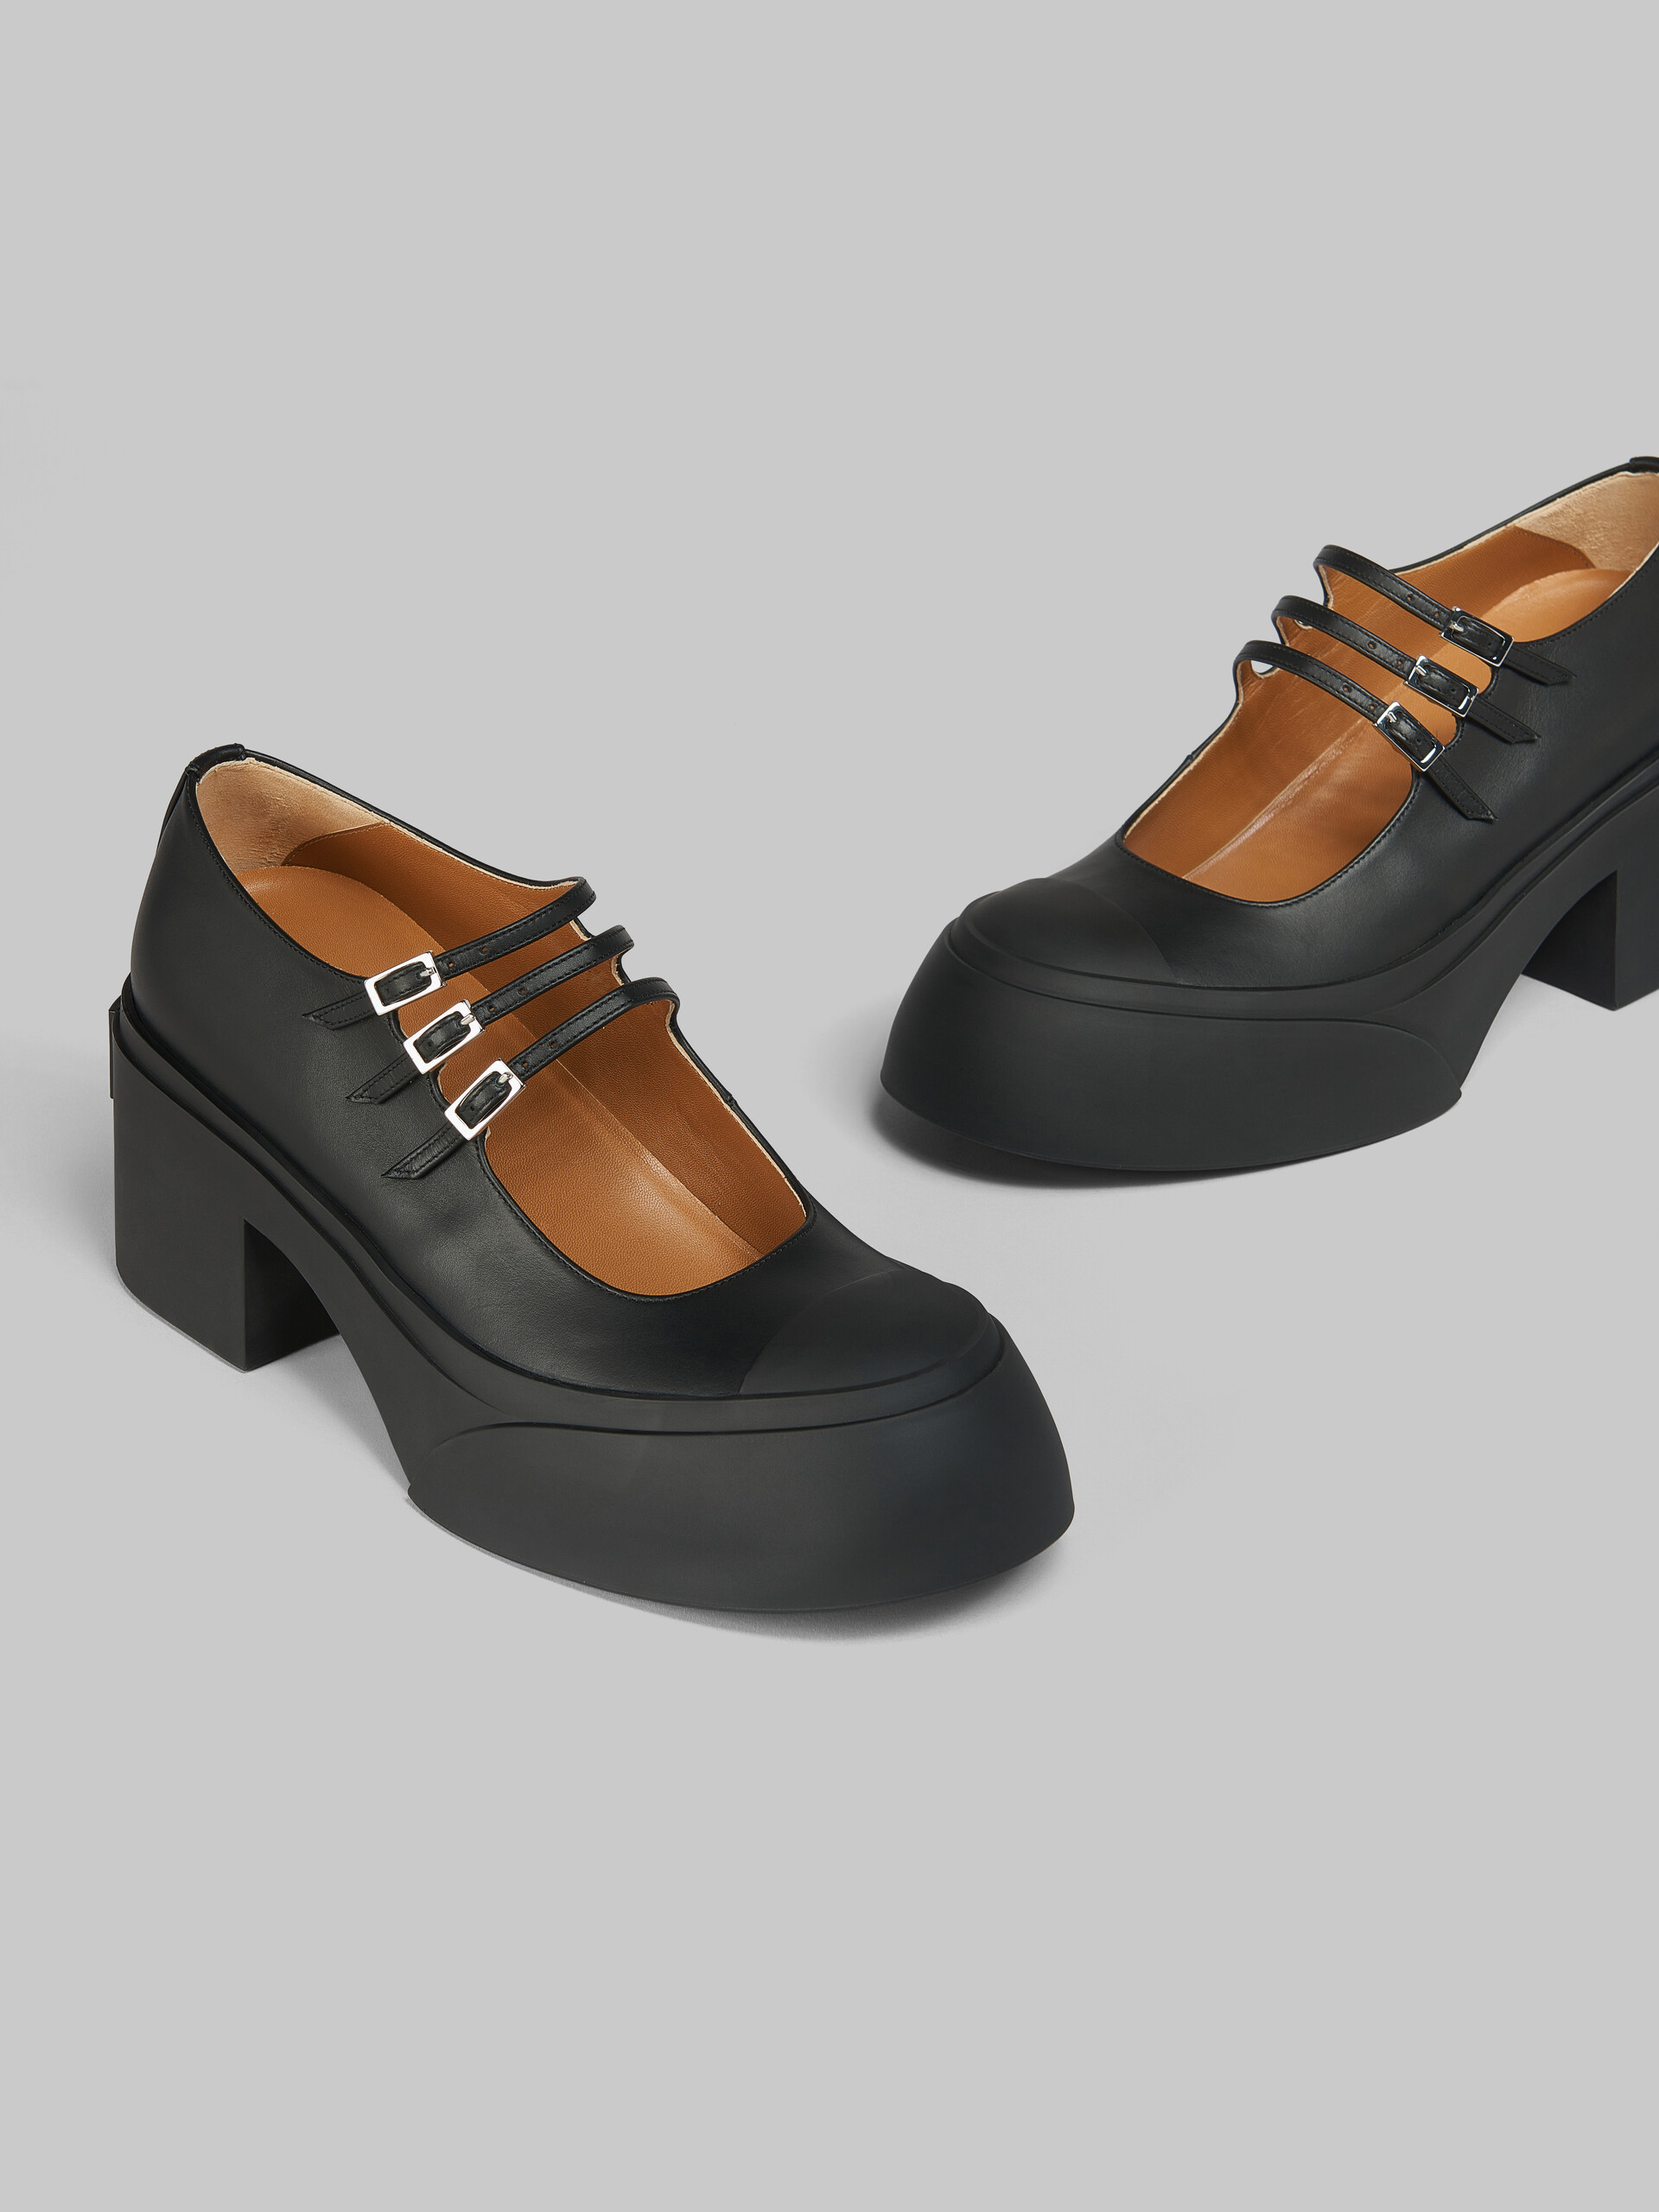 Scarpa Pablo Mary Jane in pelle nera con triplo cinturino - Sneakers - Image 5